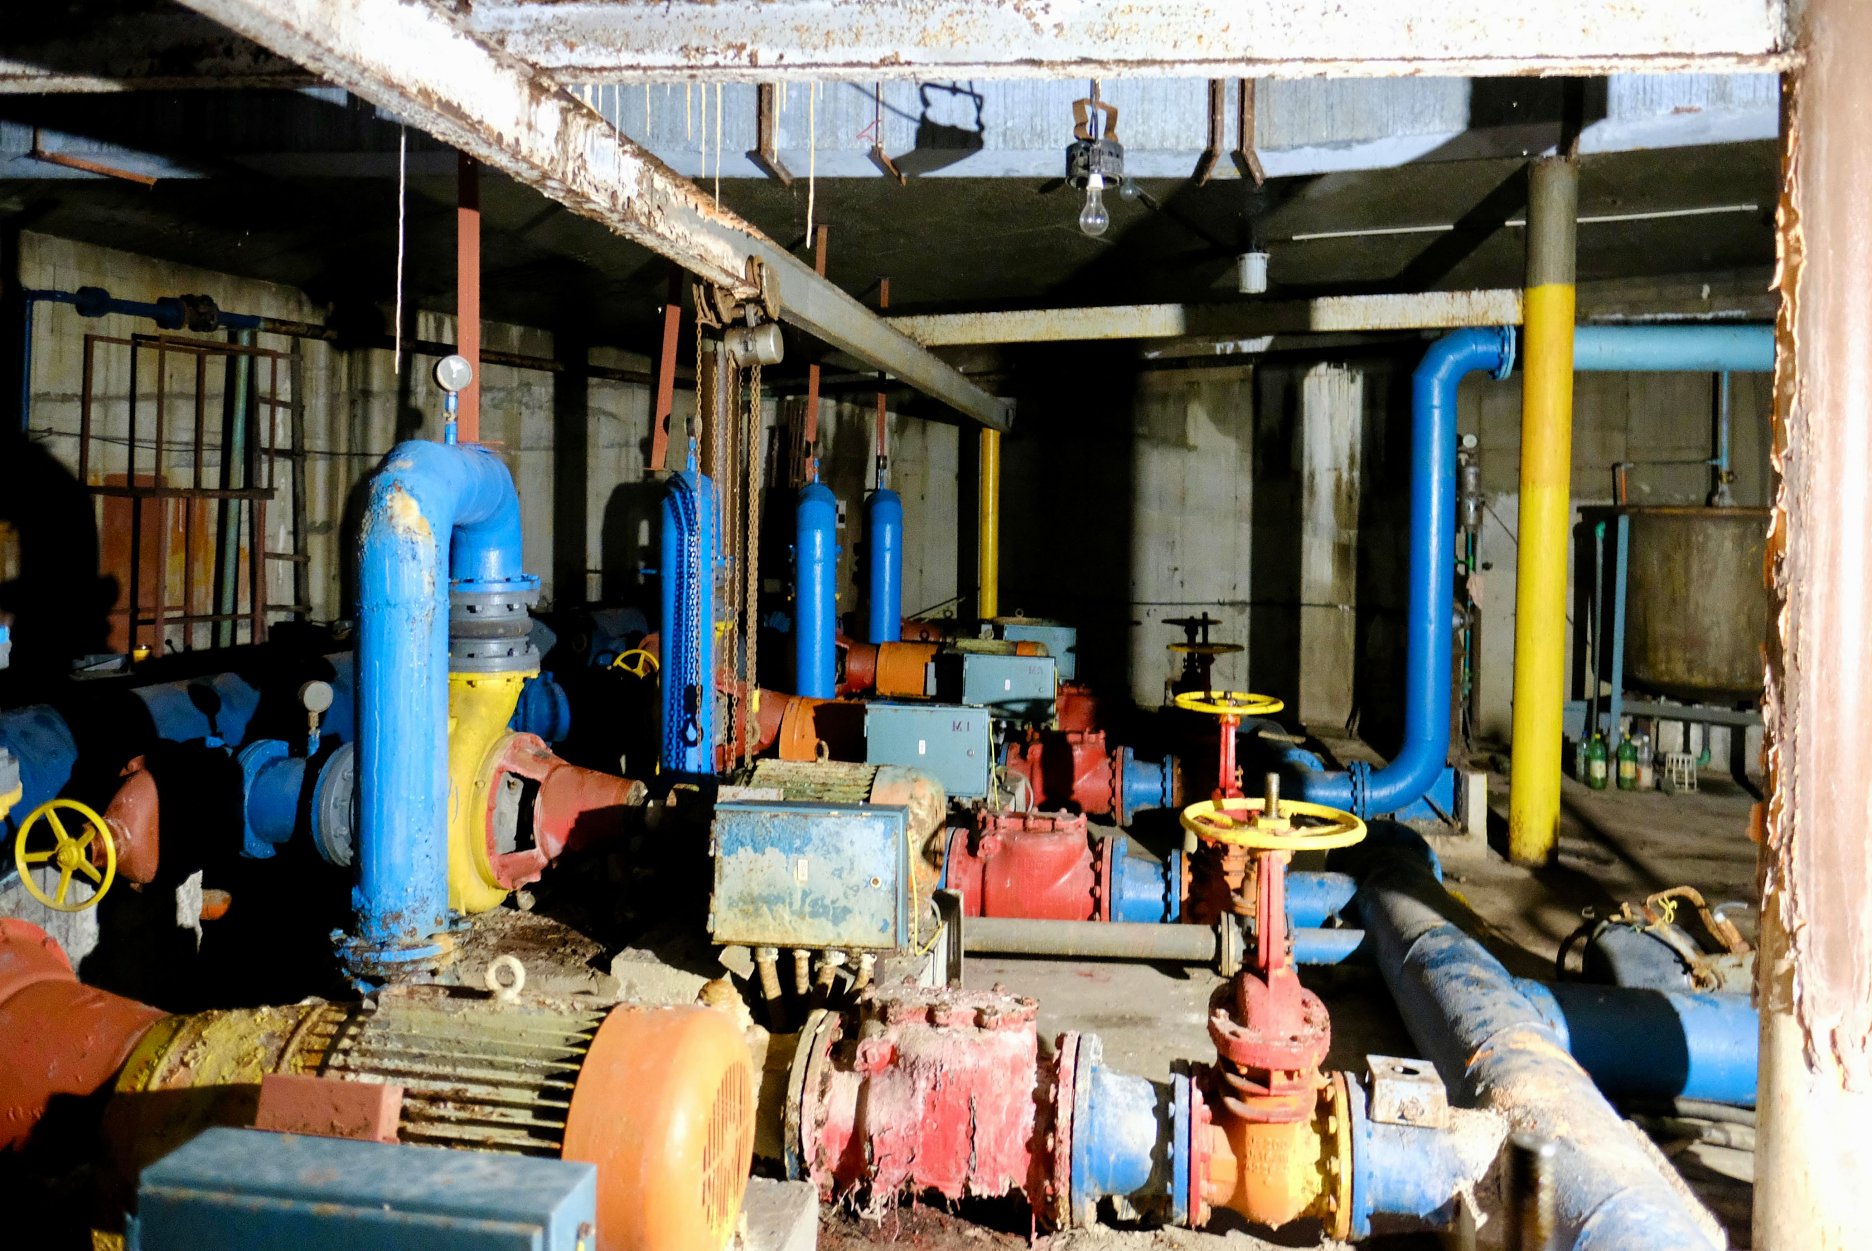 Foto: Marek Velček - Pôvodný stav podzemnej technickej miestnosti s nefunkčnými čerpadlami